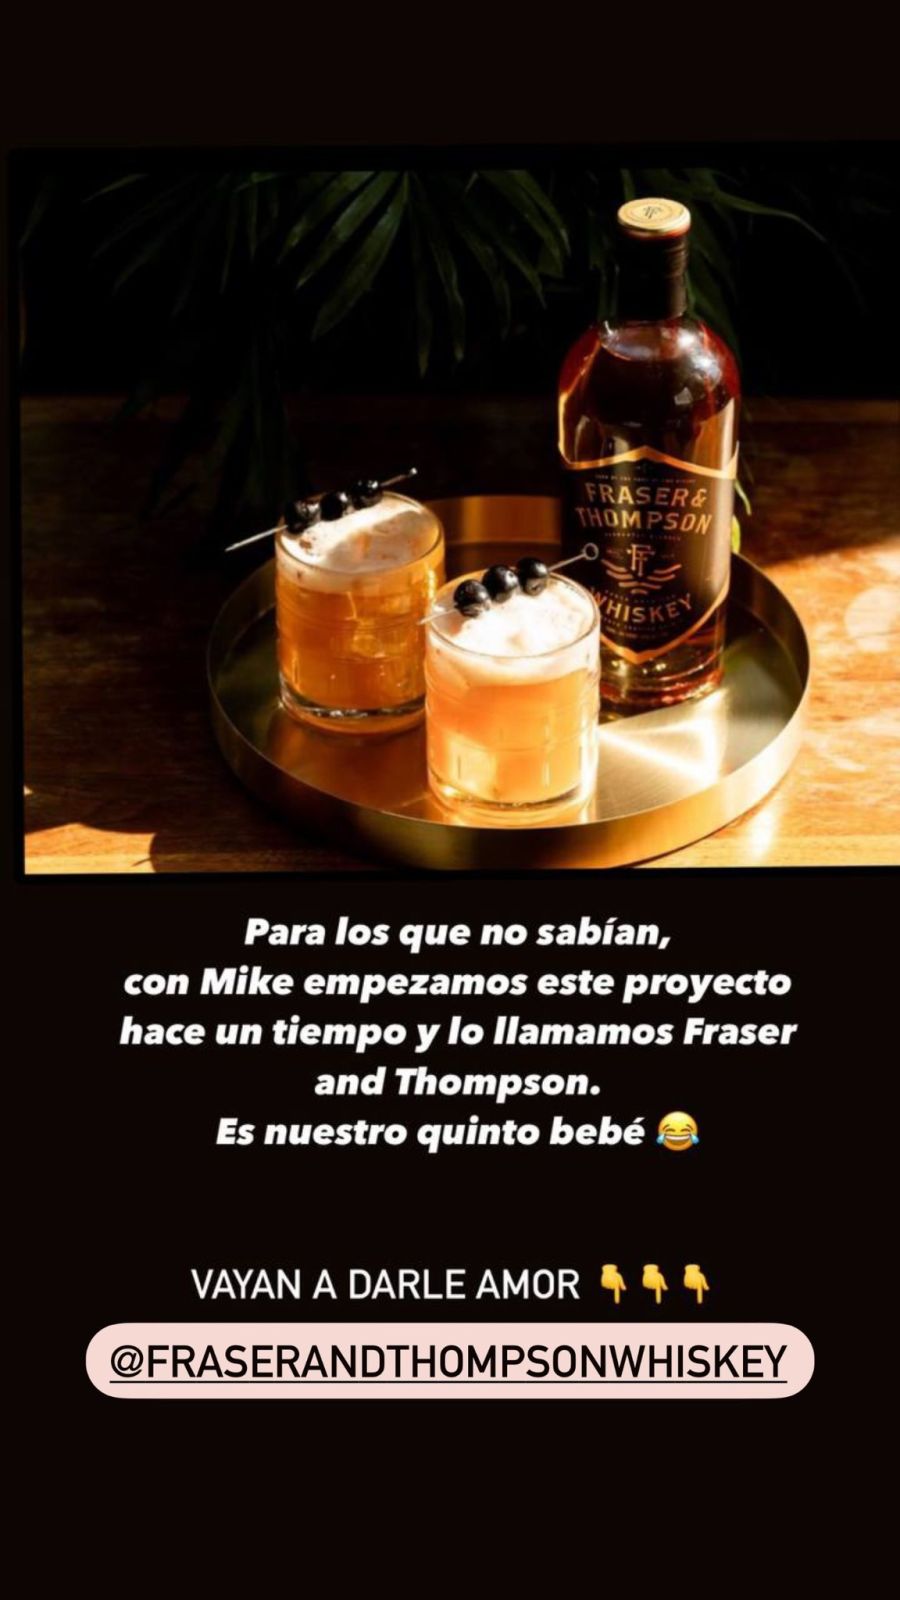 Luisana Lopilato y Michael Bublé sacaron su marca de Whisky